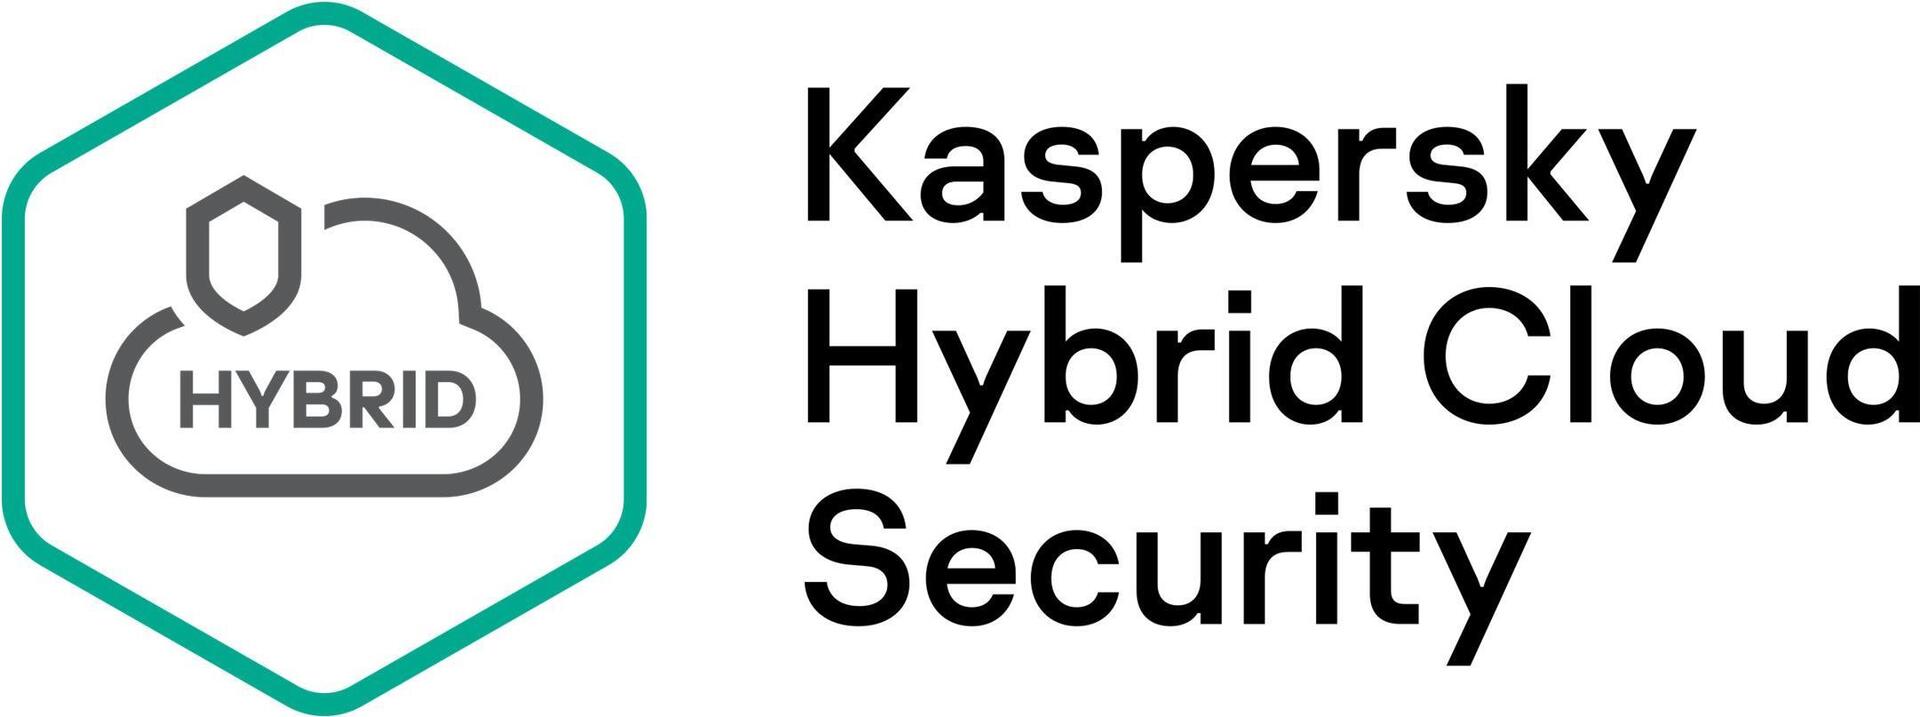 KASPERSKY Hybrid Cloud Security Enterprise CPU European Edition 5-9 CPU 2 year Renewal Plus License (KL4553XAED9)